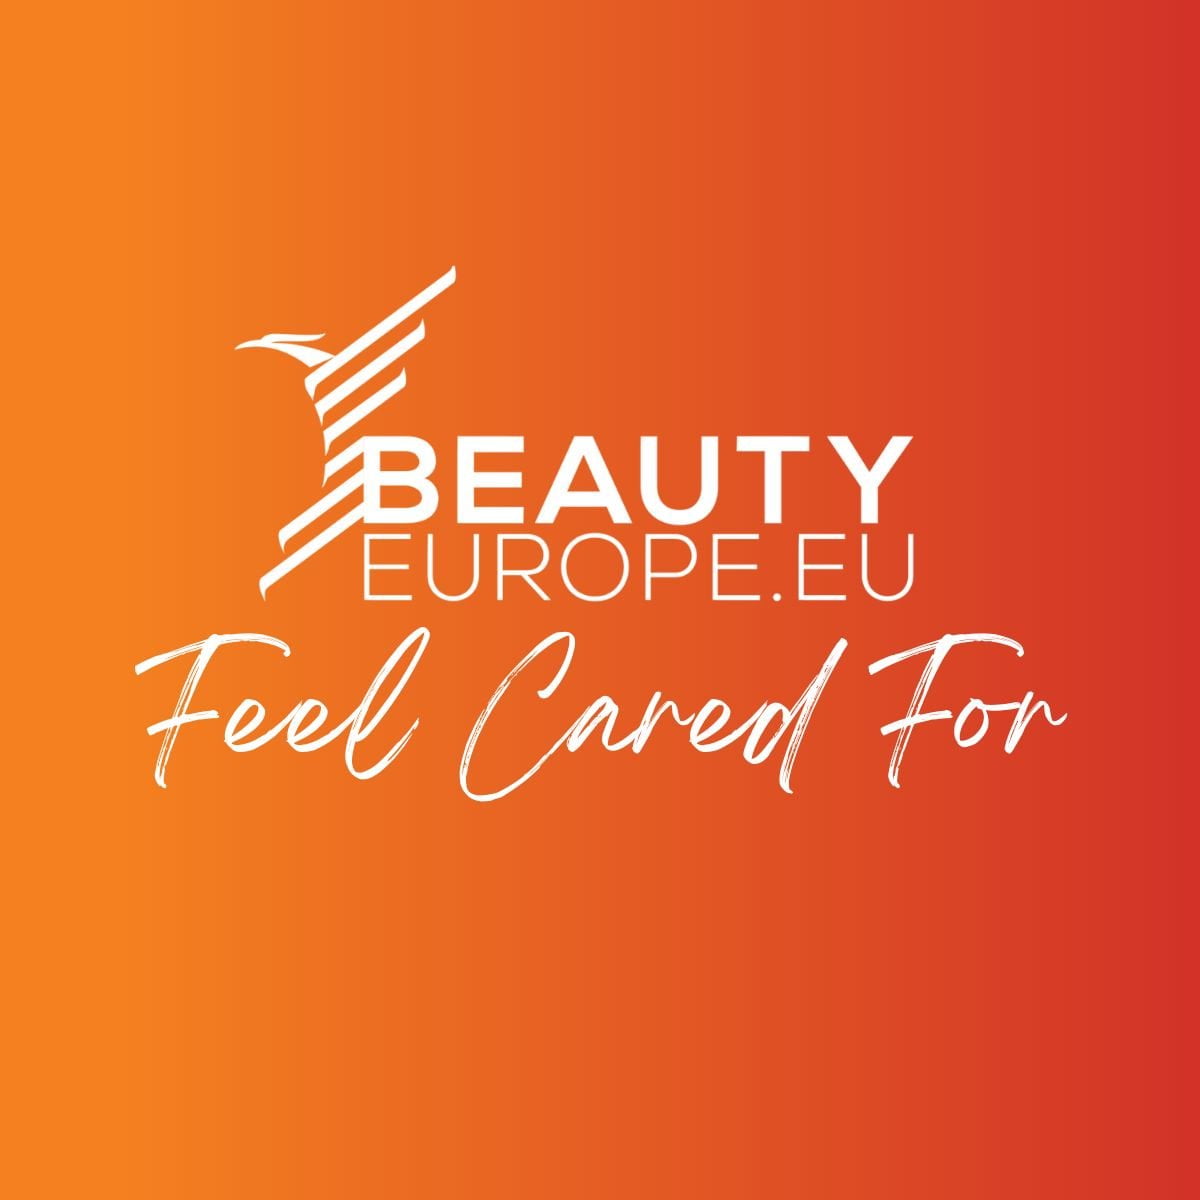 Beautyeurope.eu